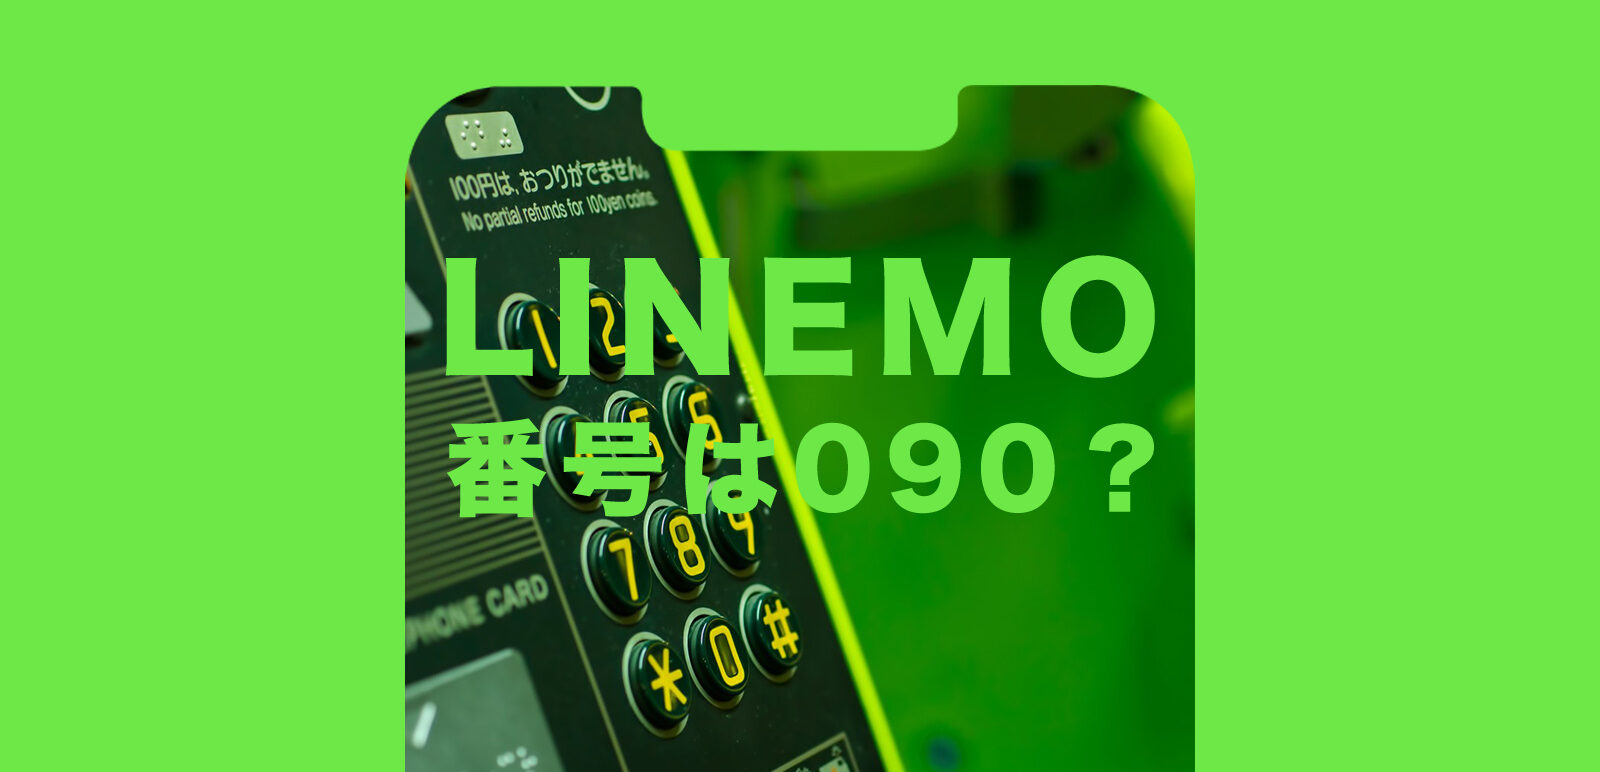 LINEMO(ラインモ)で新規契約時の電話番号は090&080&070のどれになる？選べる？のサムネイル画像